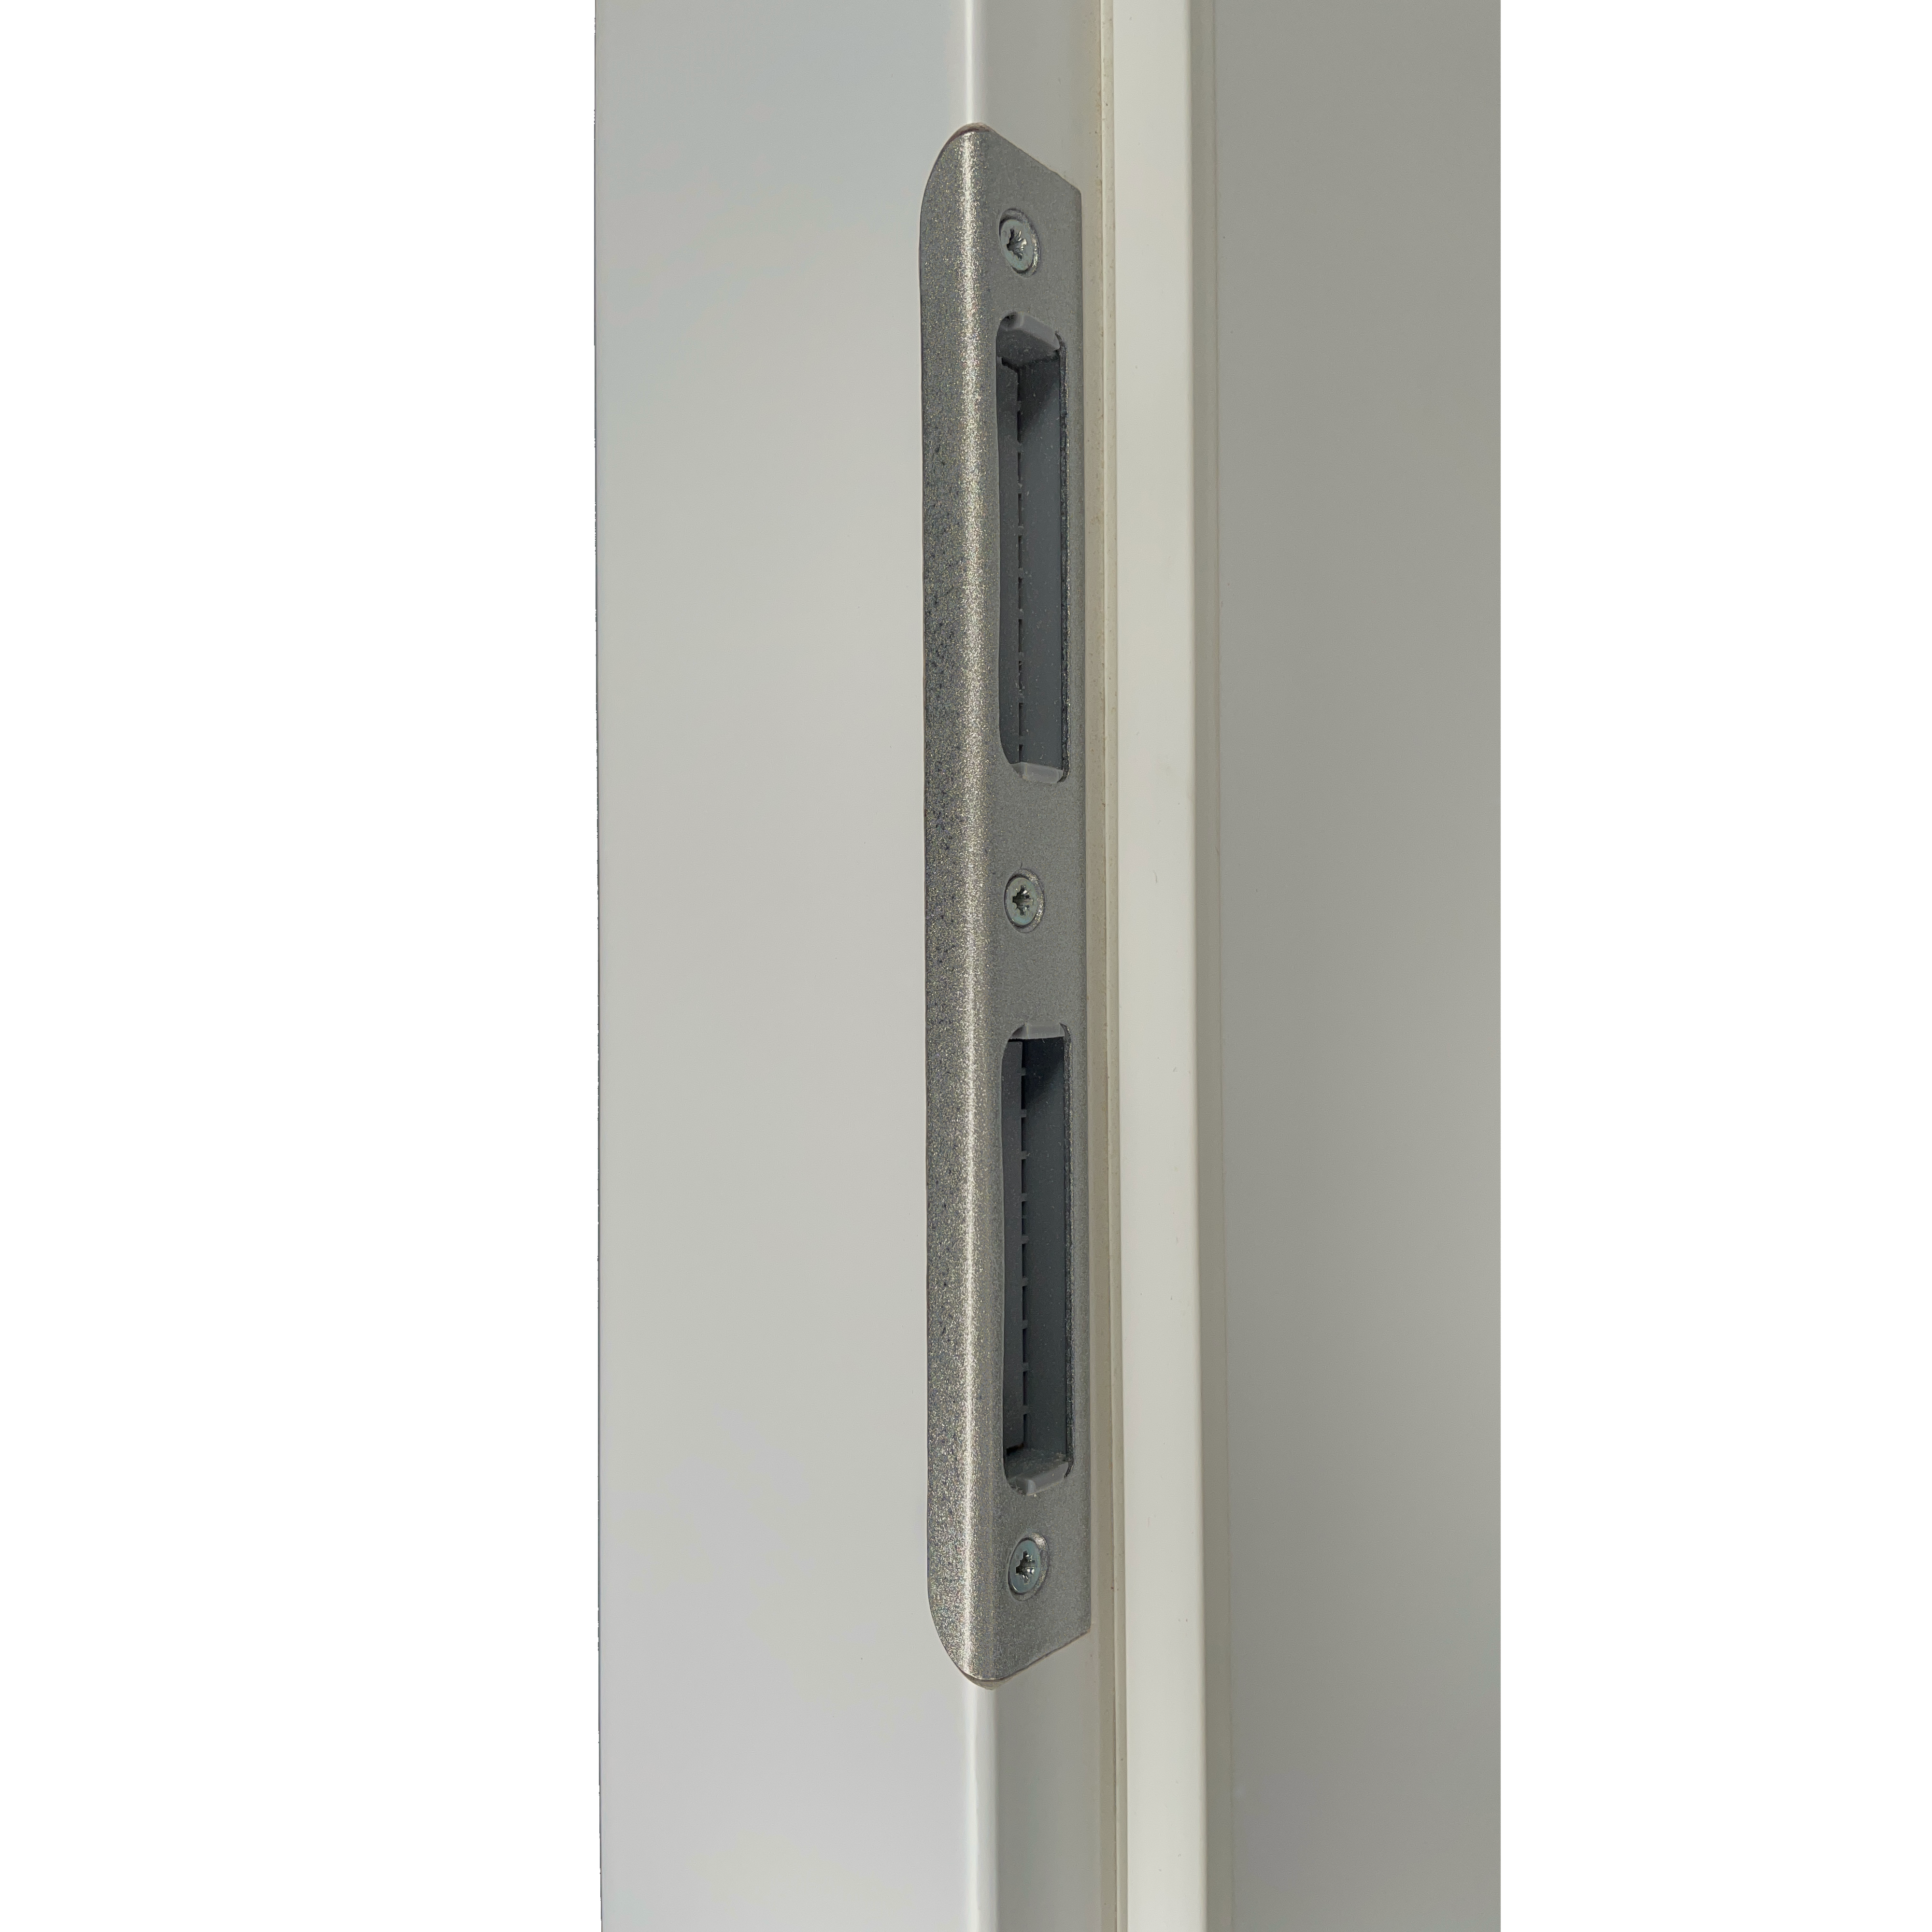 Zimmertür mit Zarge soft-weiß mit 4 Rillen und Lichtausschnitt Eckkante - Modell Designtür Q41LA